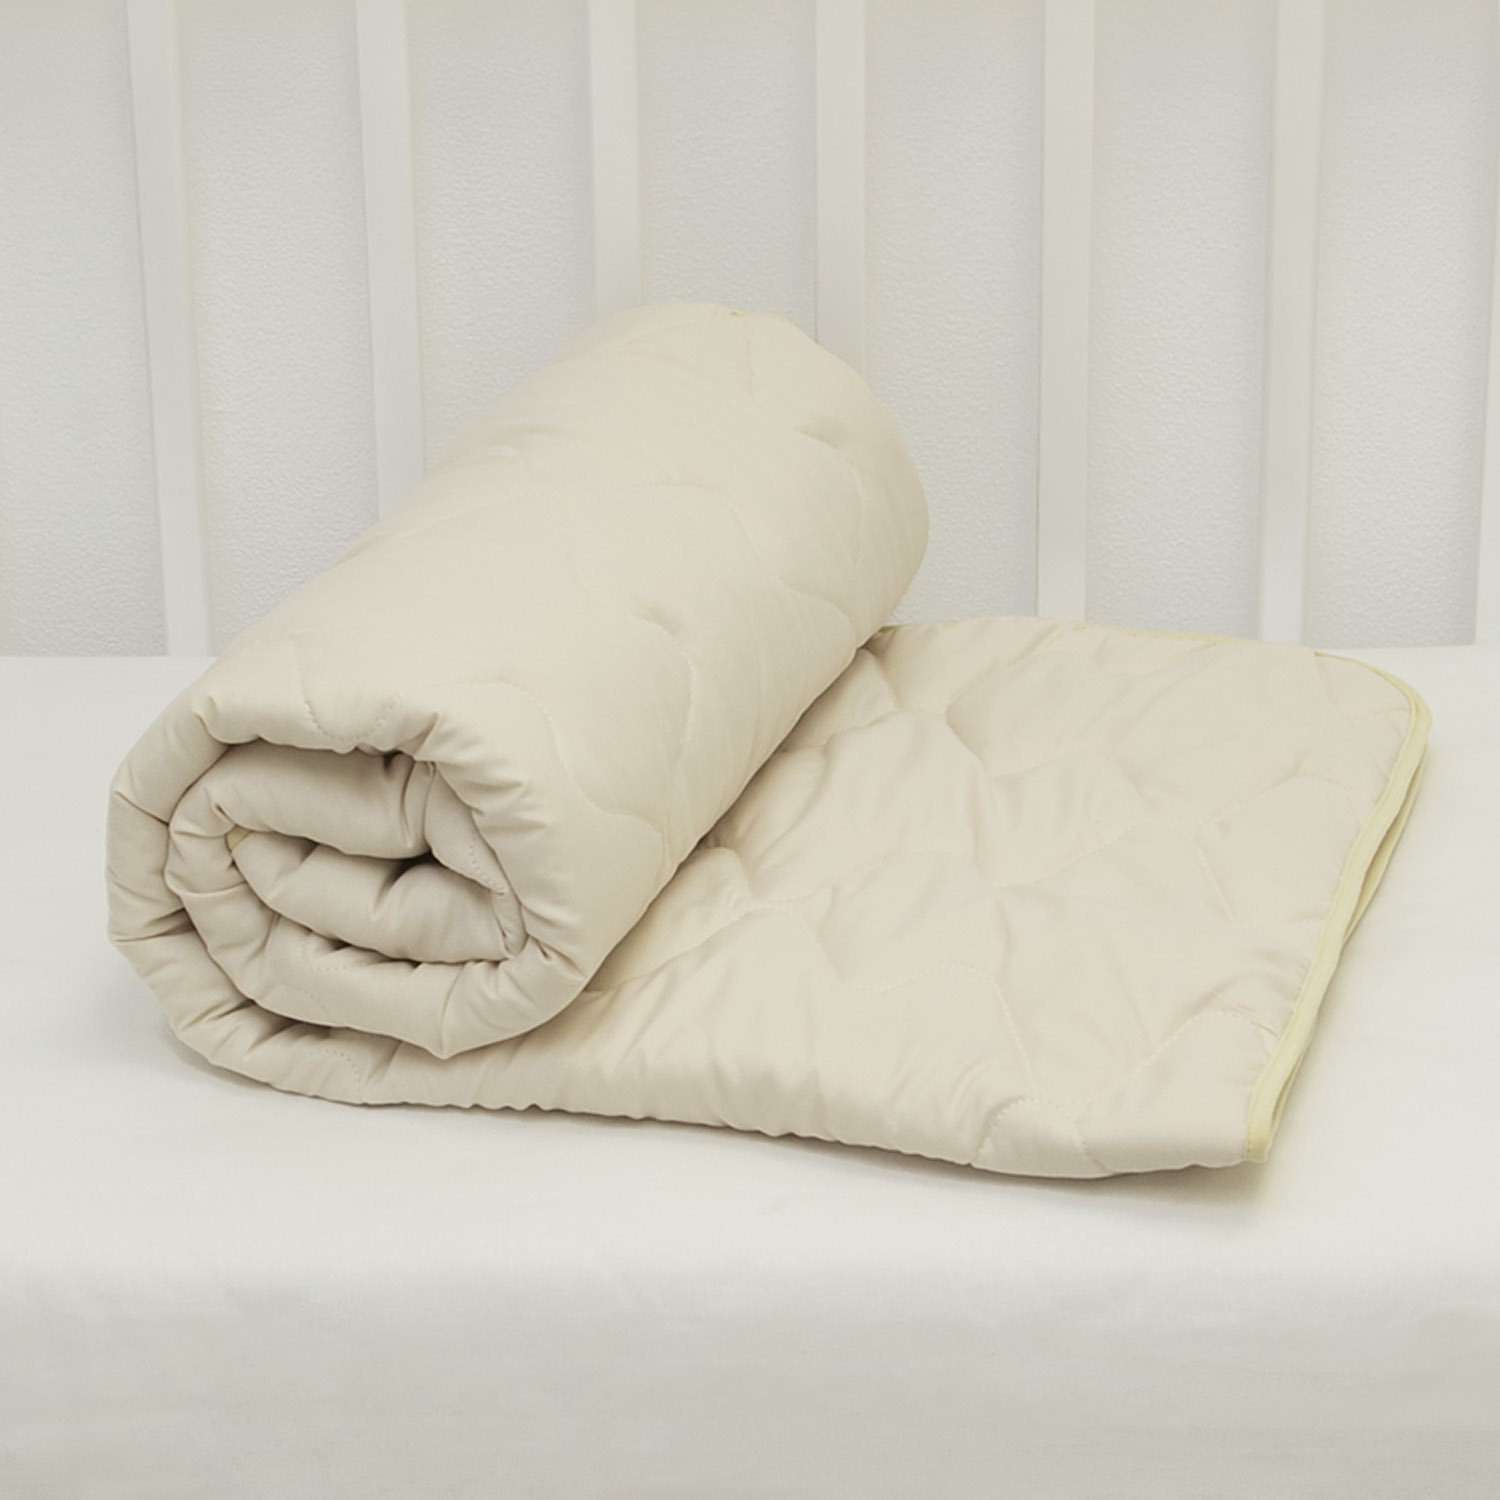 Одеяло стеганое Споки Ноки Q0510143 - фото 3